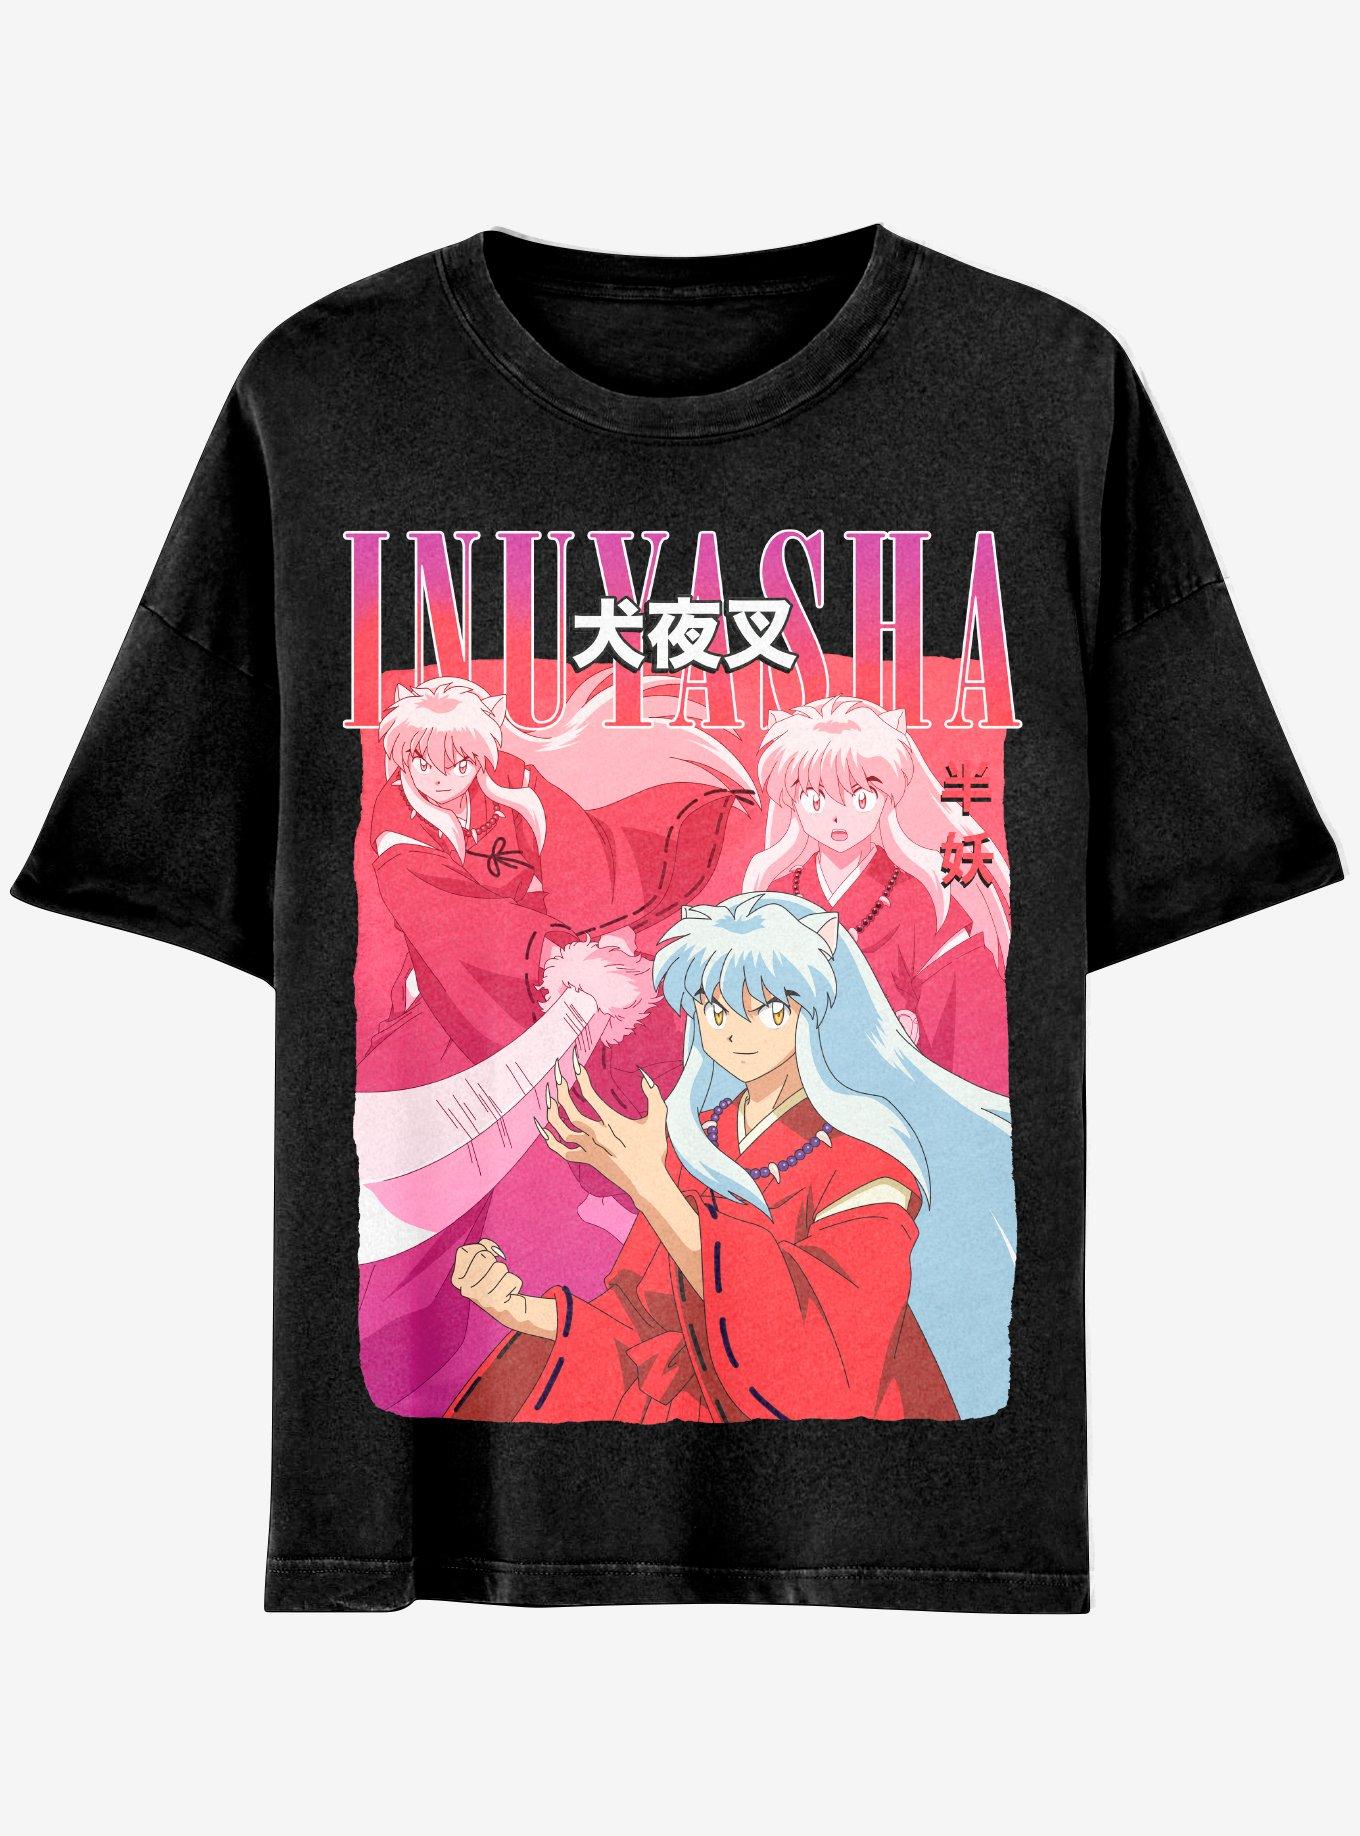 InuYasha Collage Boyfriend Fit Girls T-Shirt